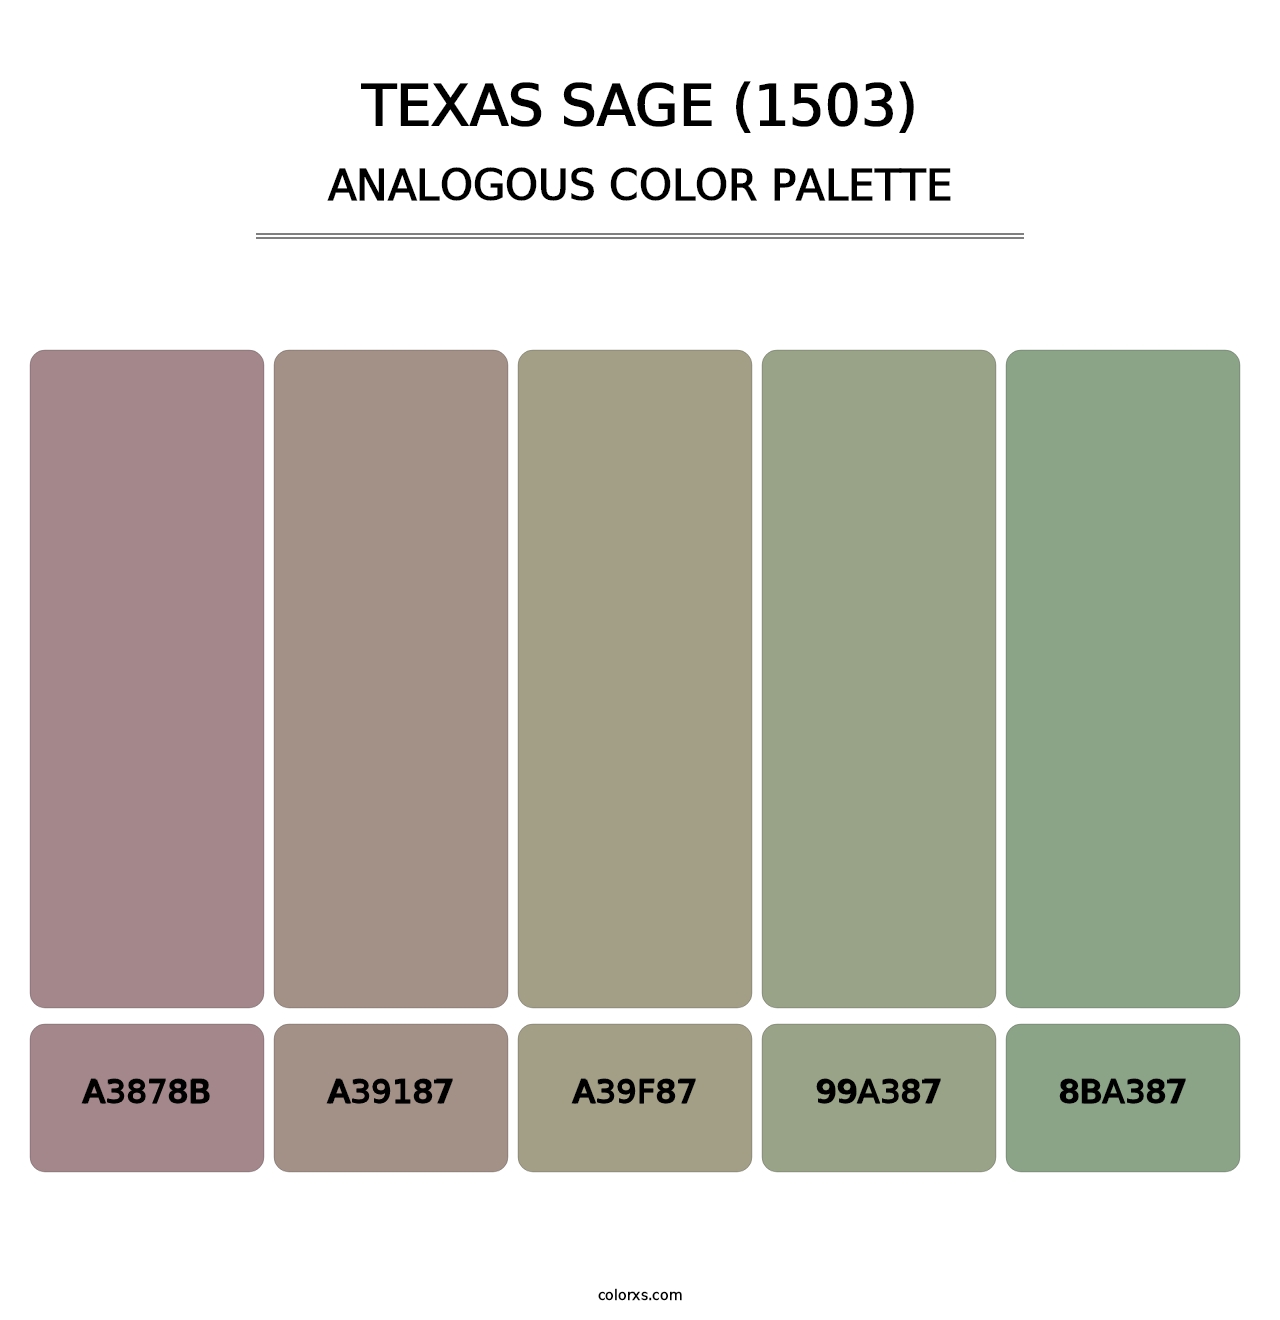 Texas Sage (1503) - Analogous Color Palette